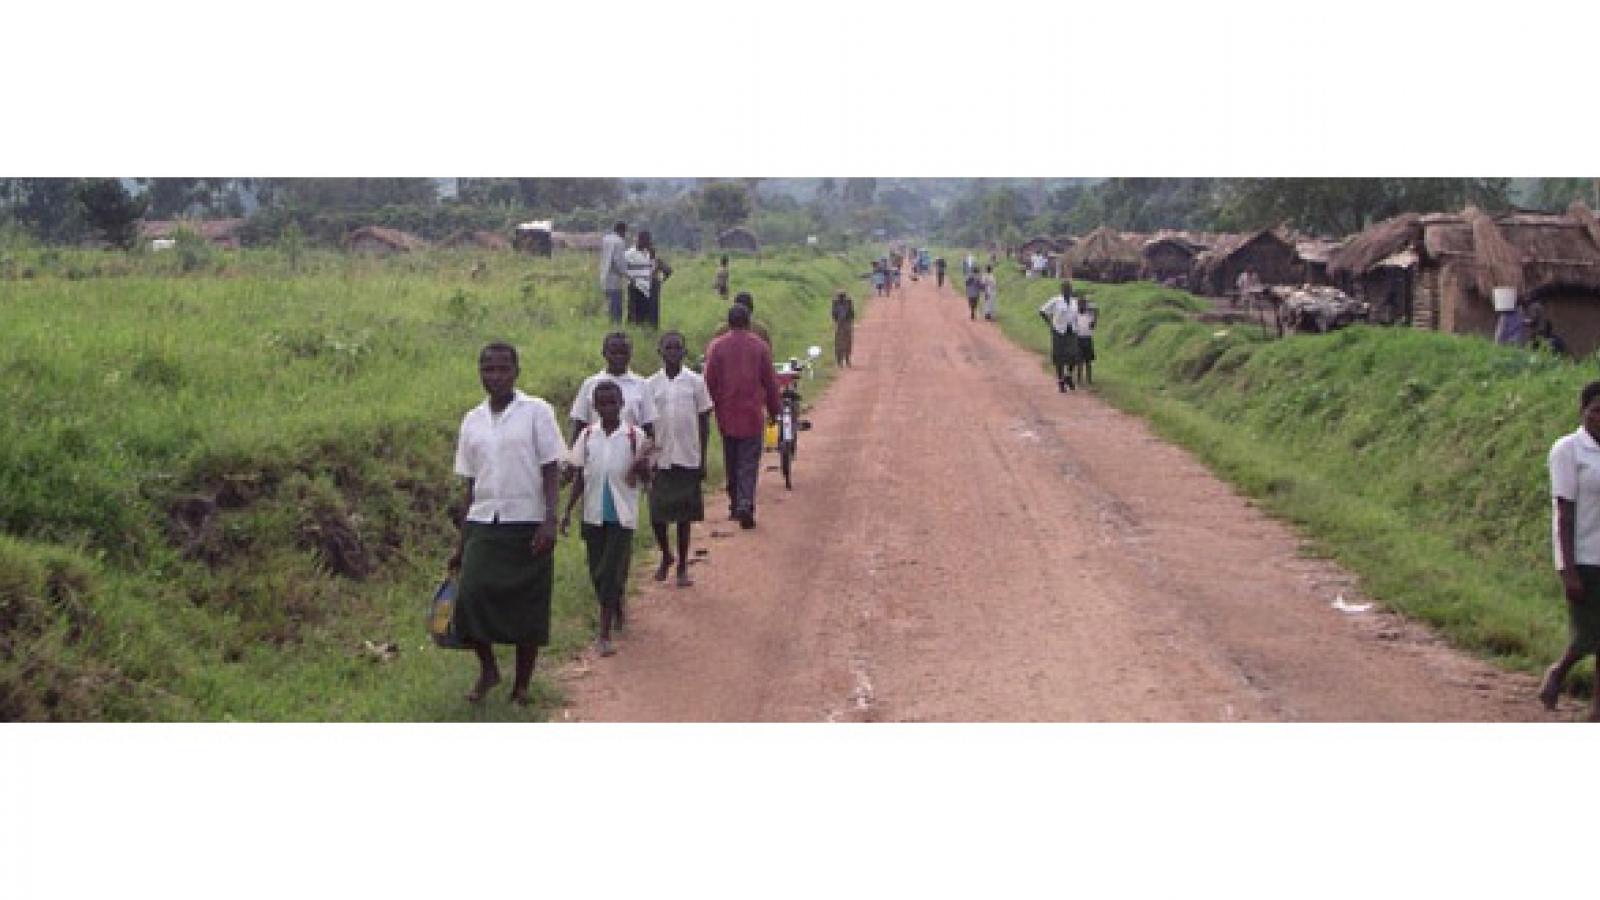 Villagers walk along an African road.